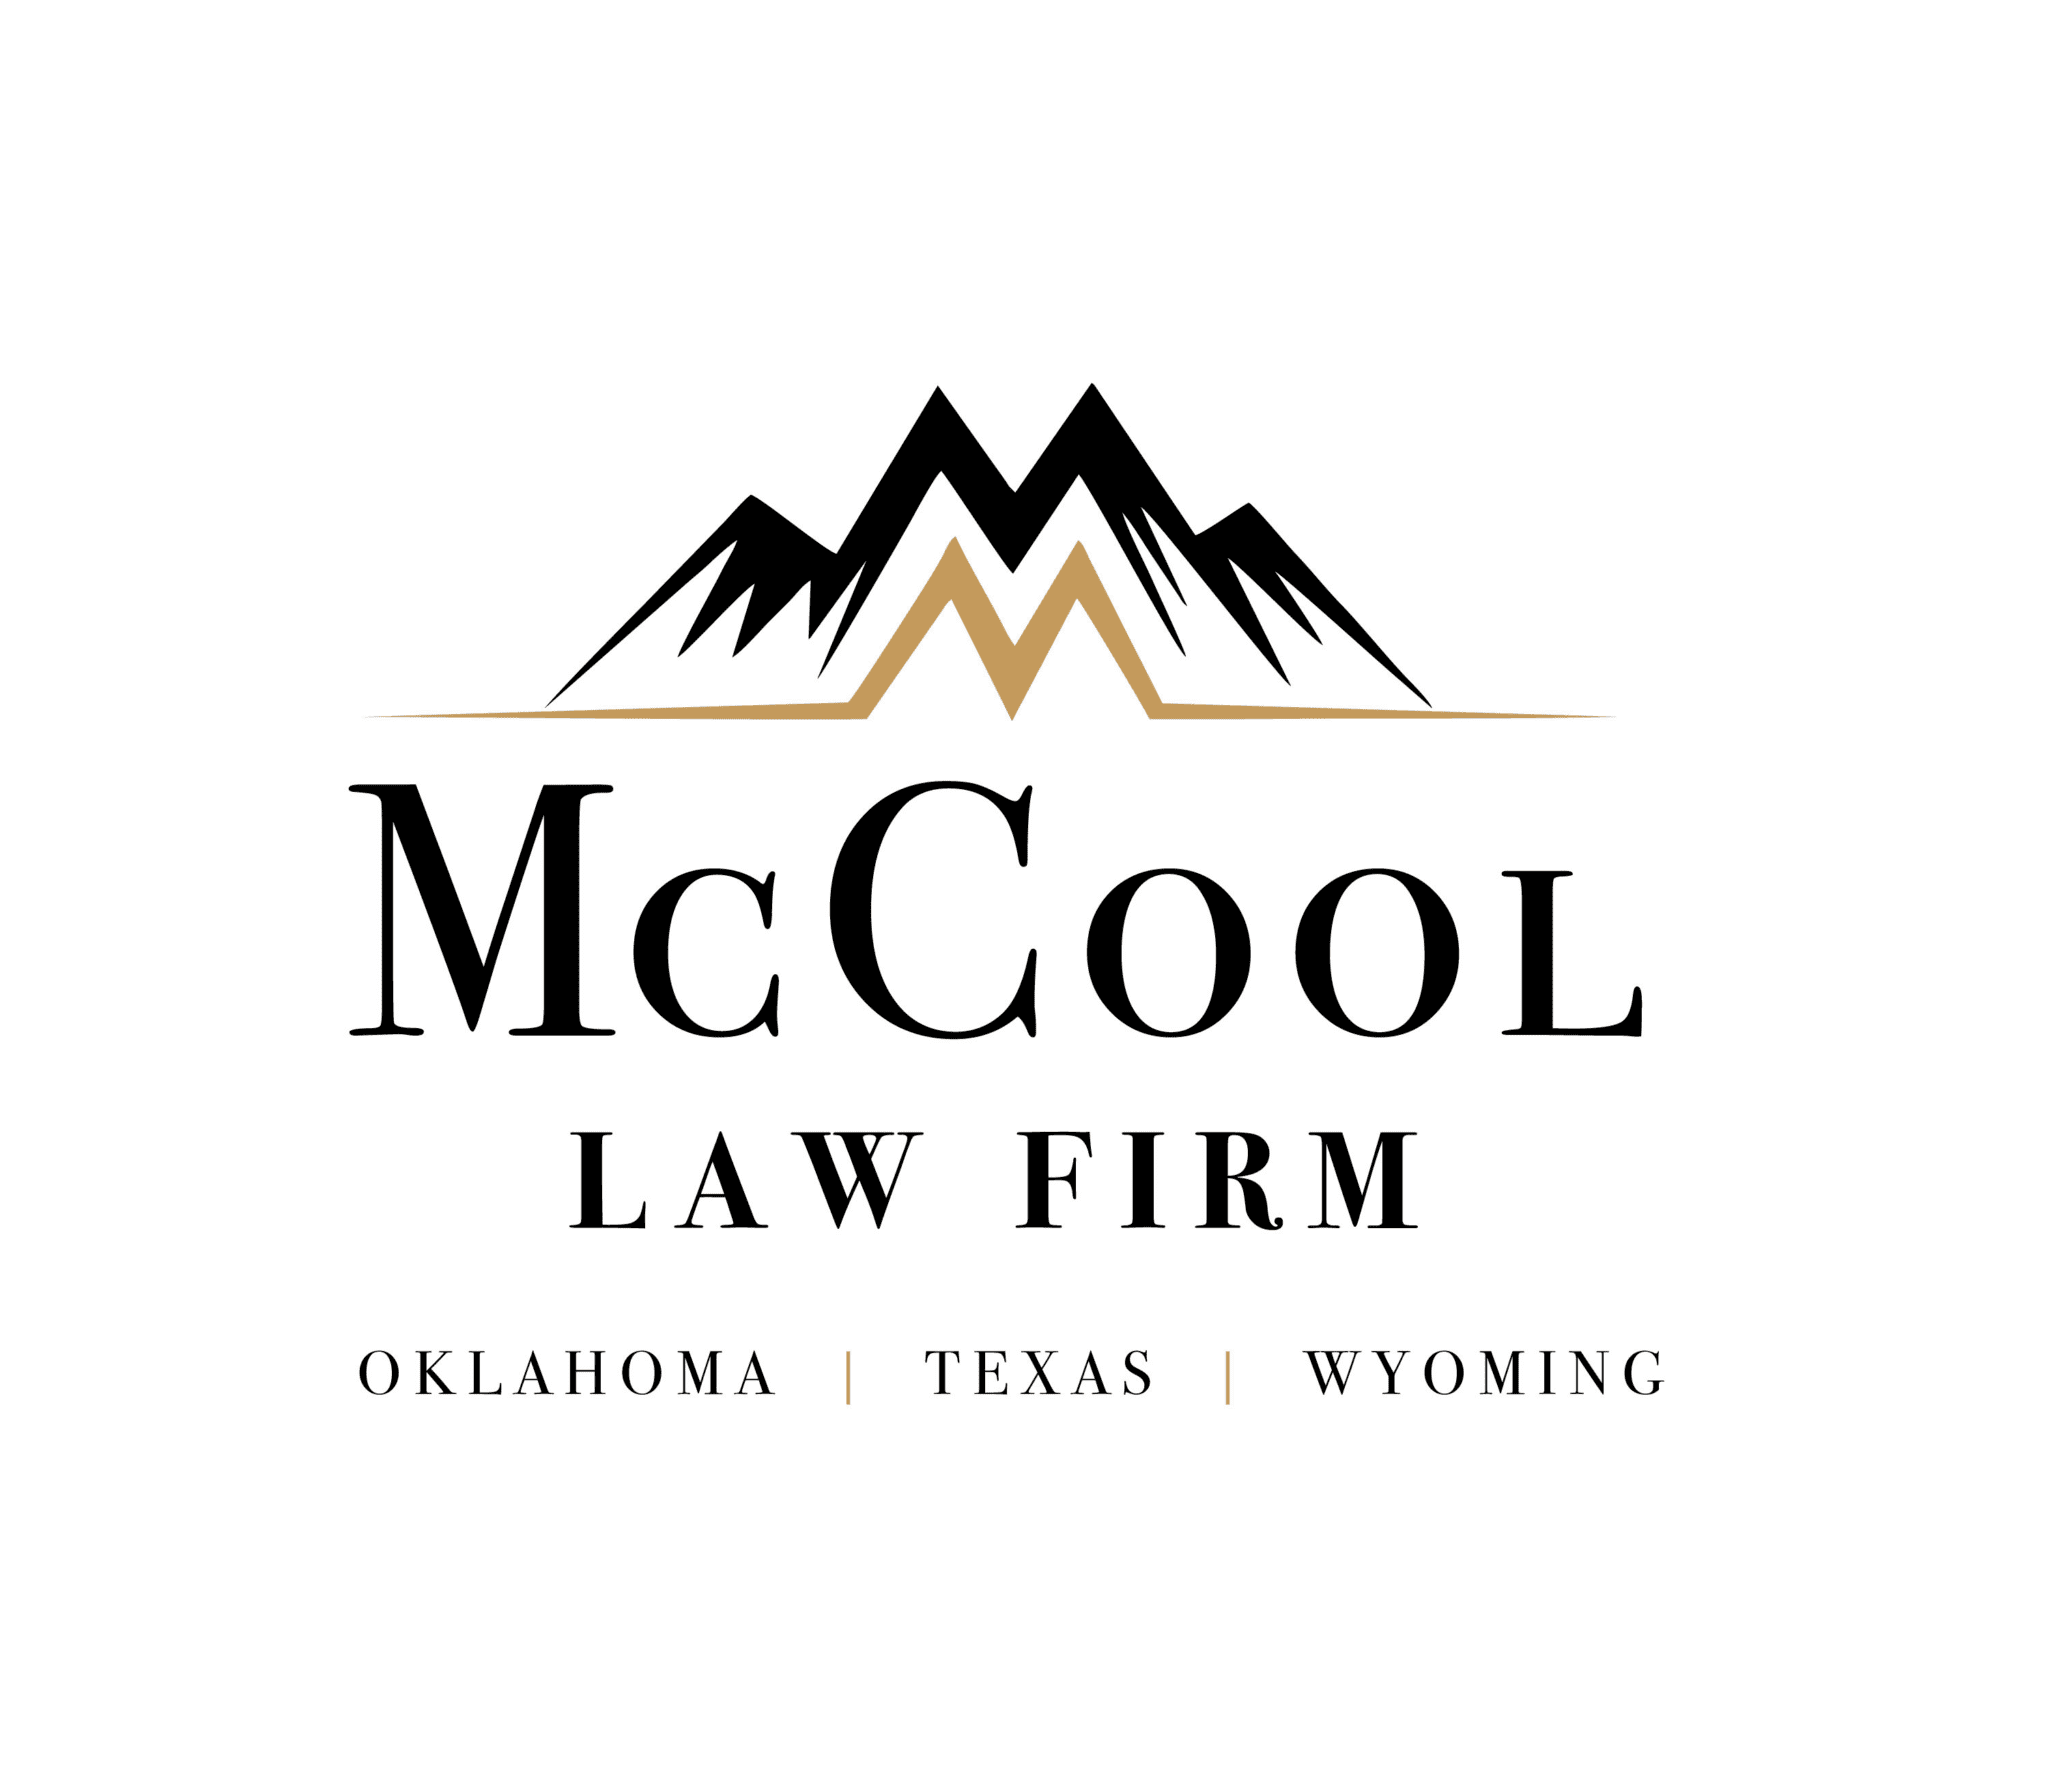 McCoolLawFirm logo